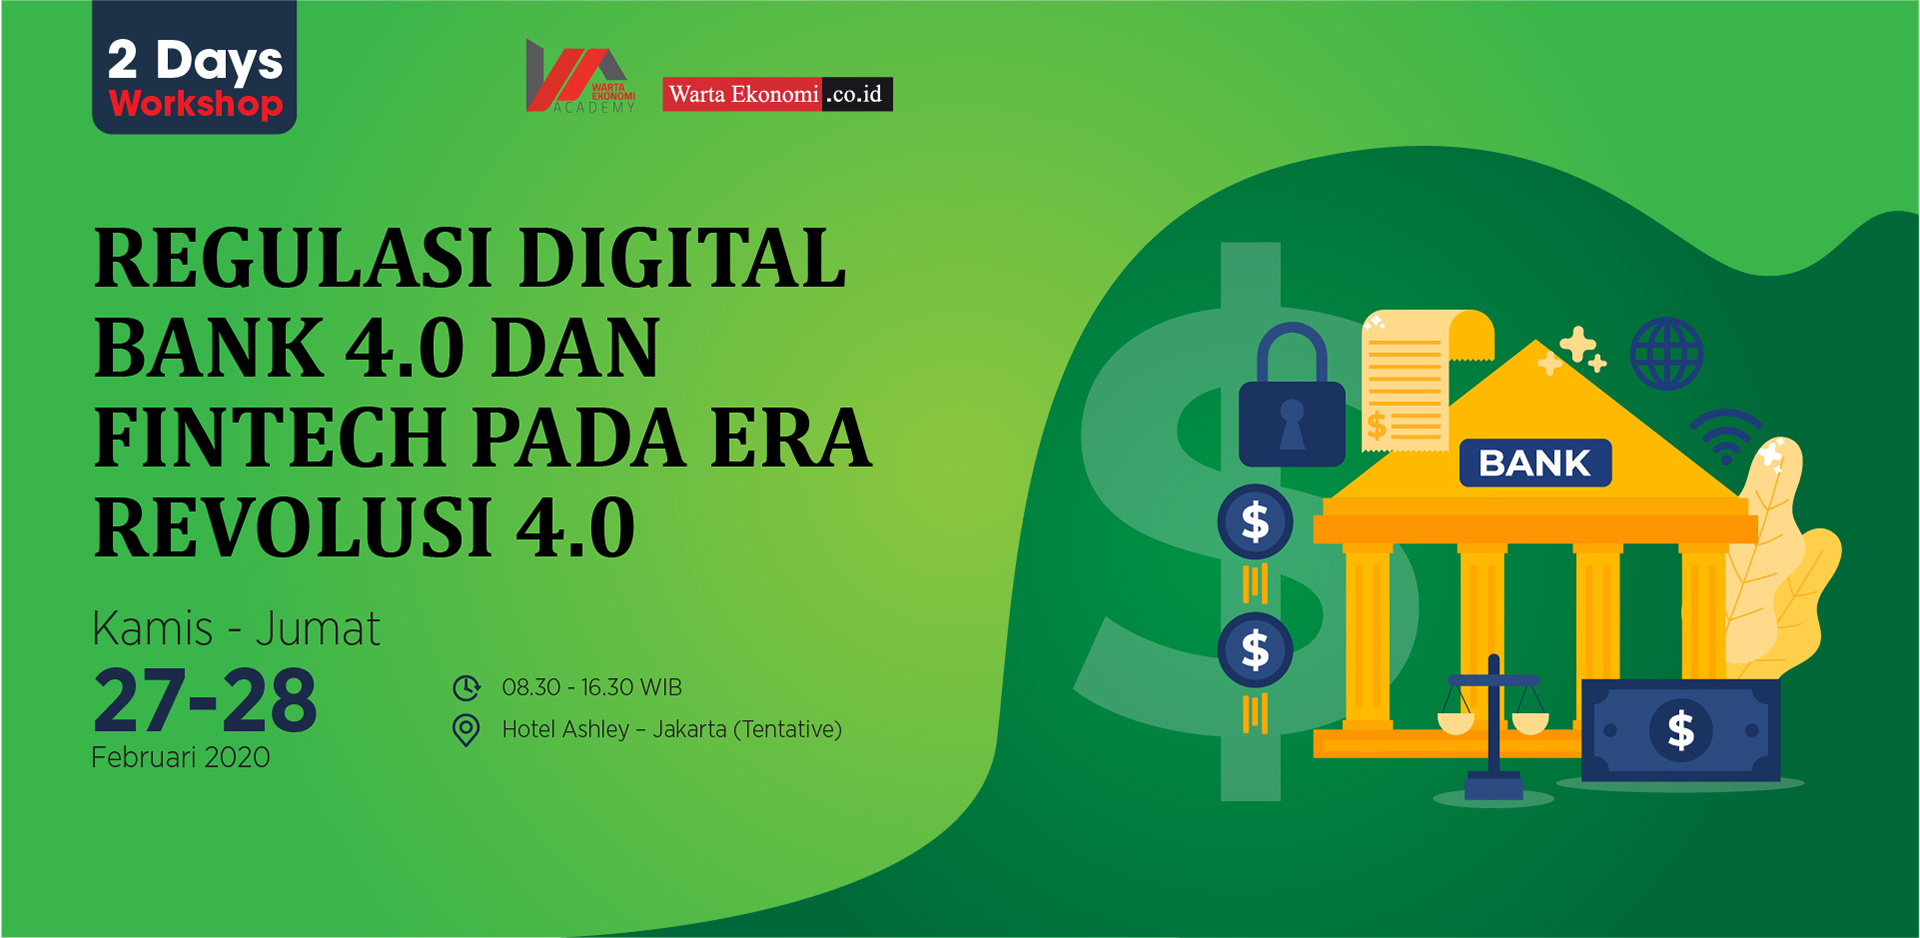 Regulasi Digital Bank 4.0 dan Fintech pada Era Revolusi Industri 4.0